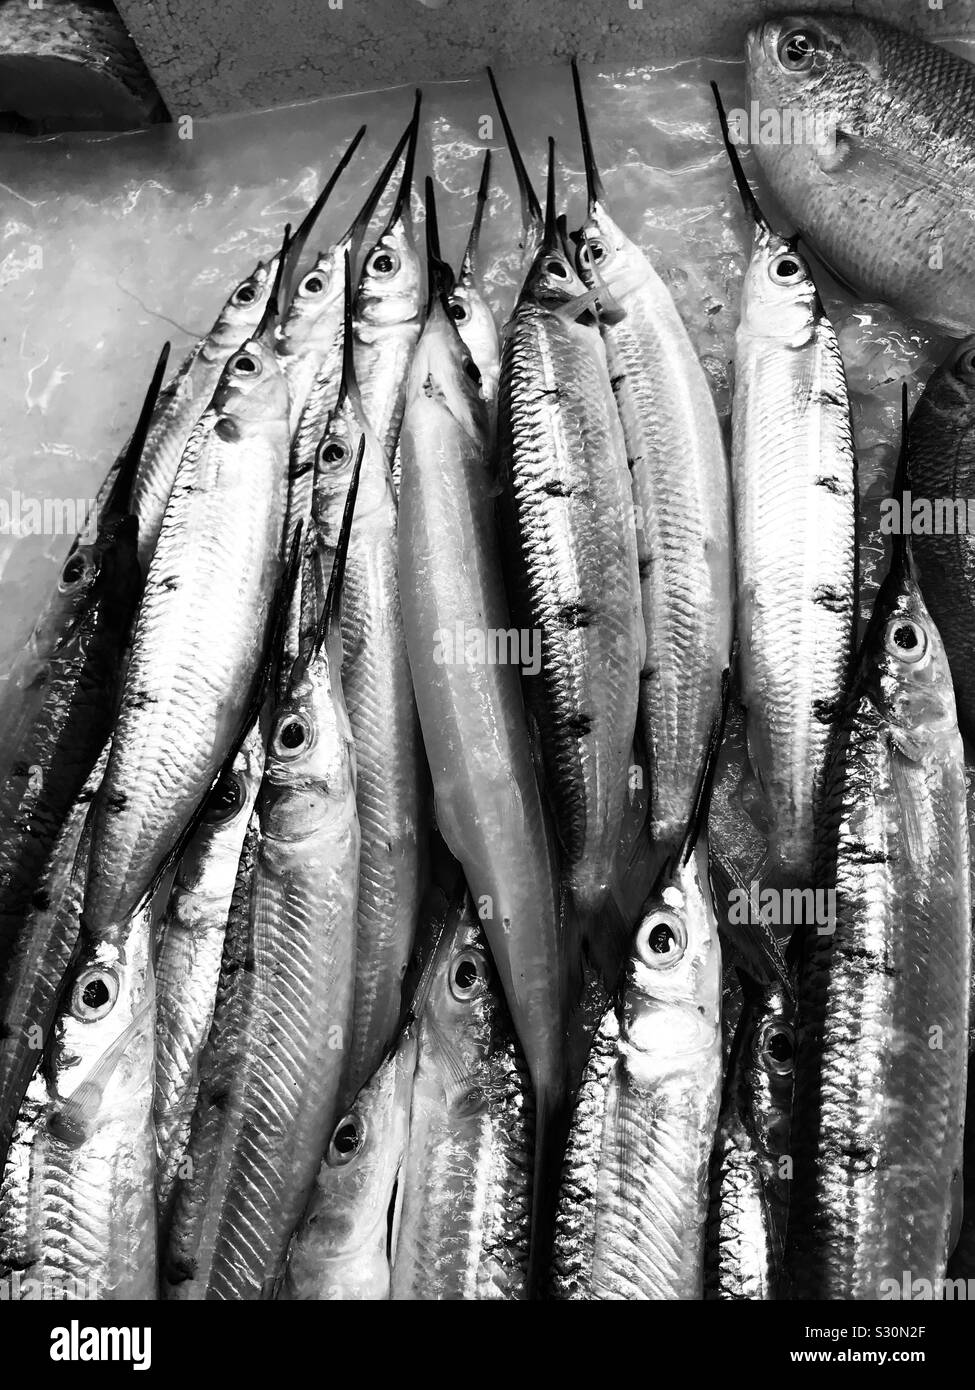 Der hornhecht Stapel in einen Fischmarkt in Singapur für Verkauf, spitze Nase Fische Stockfoto